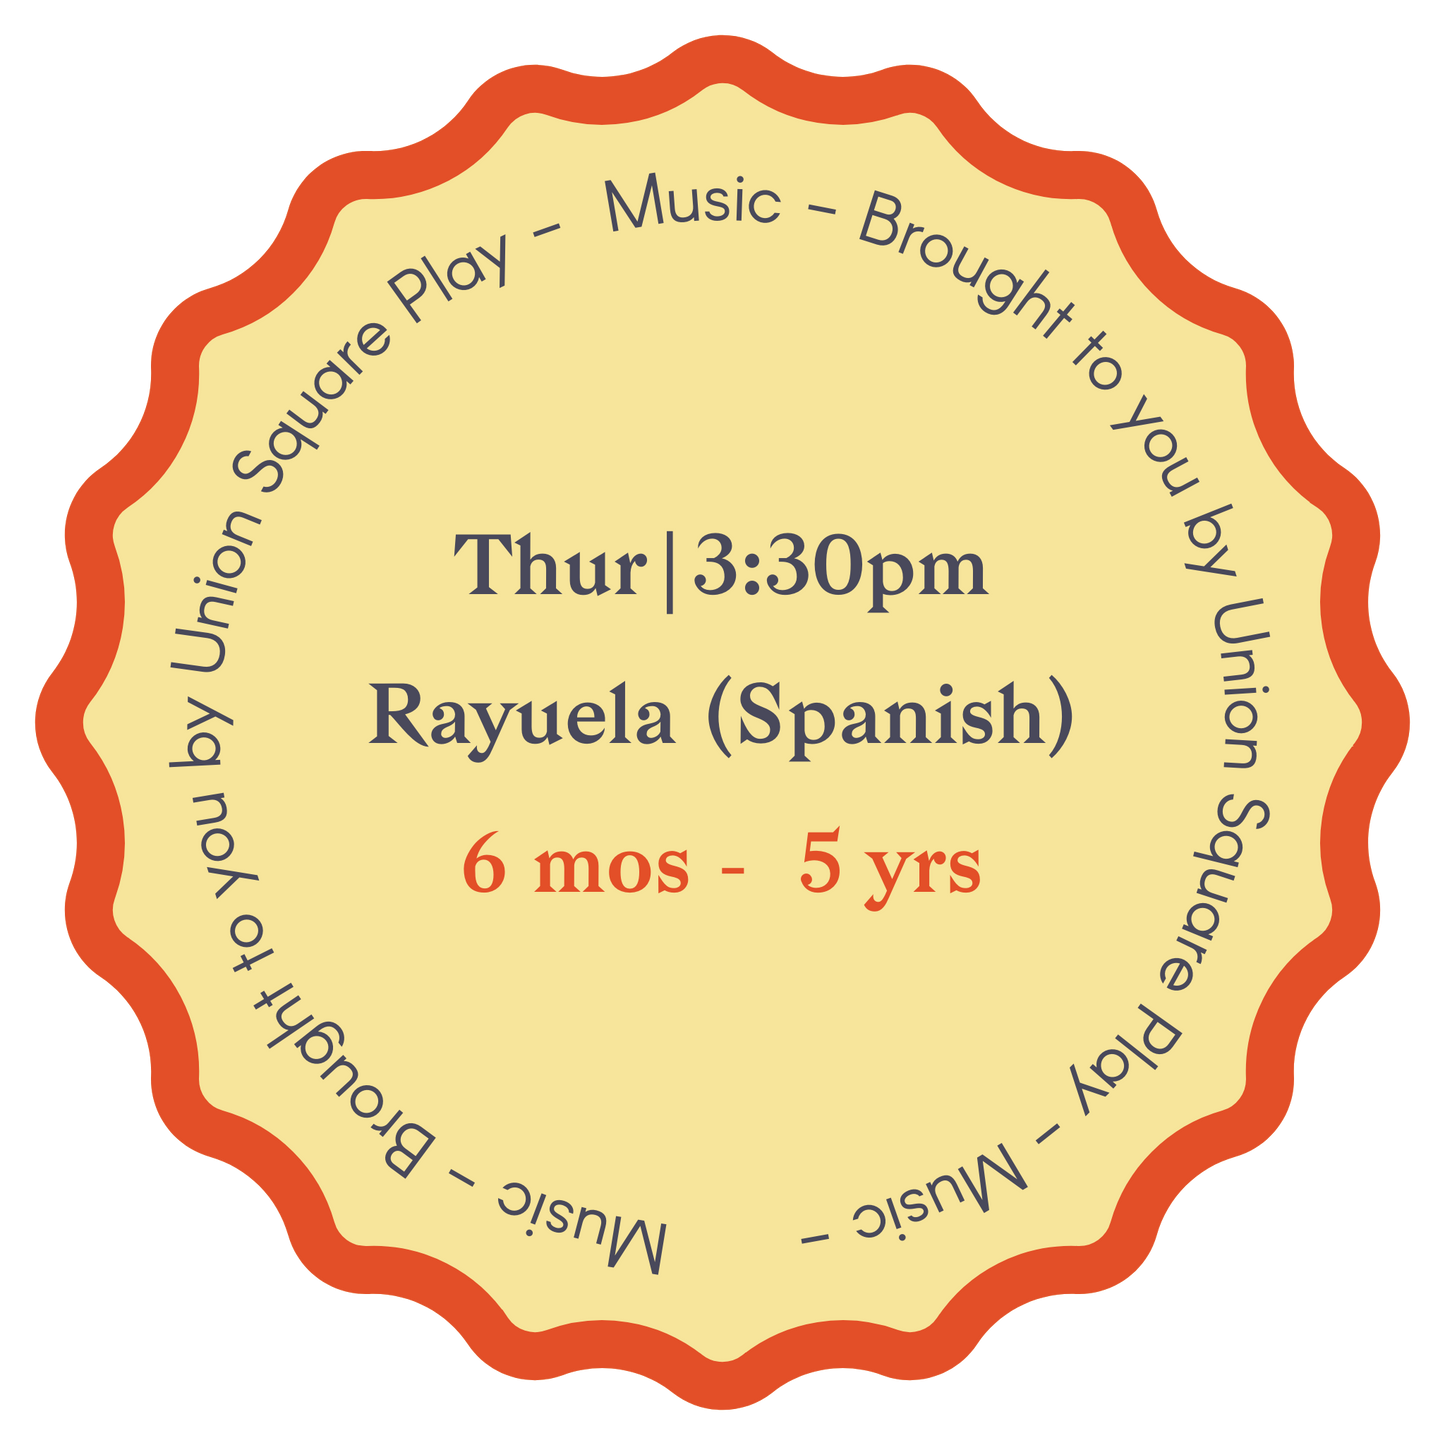 Rayuela Spanish Music